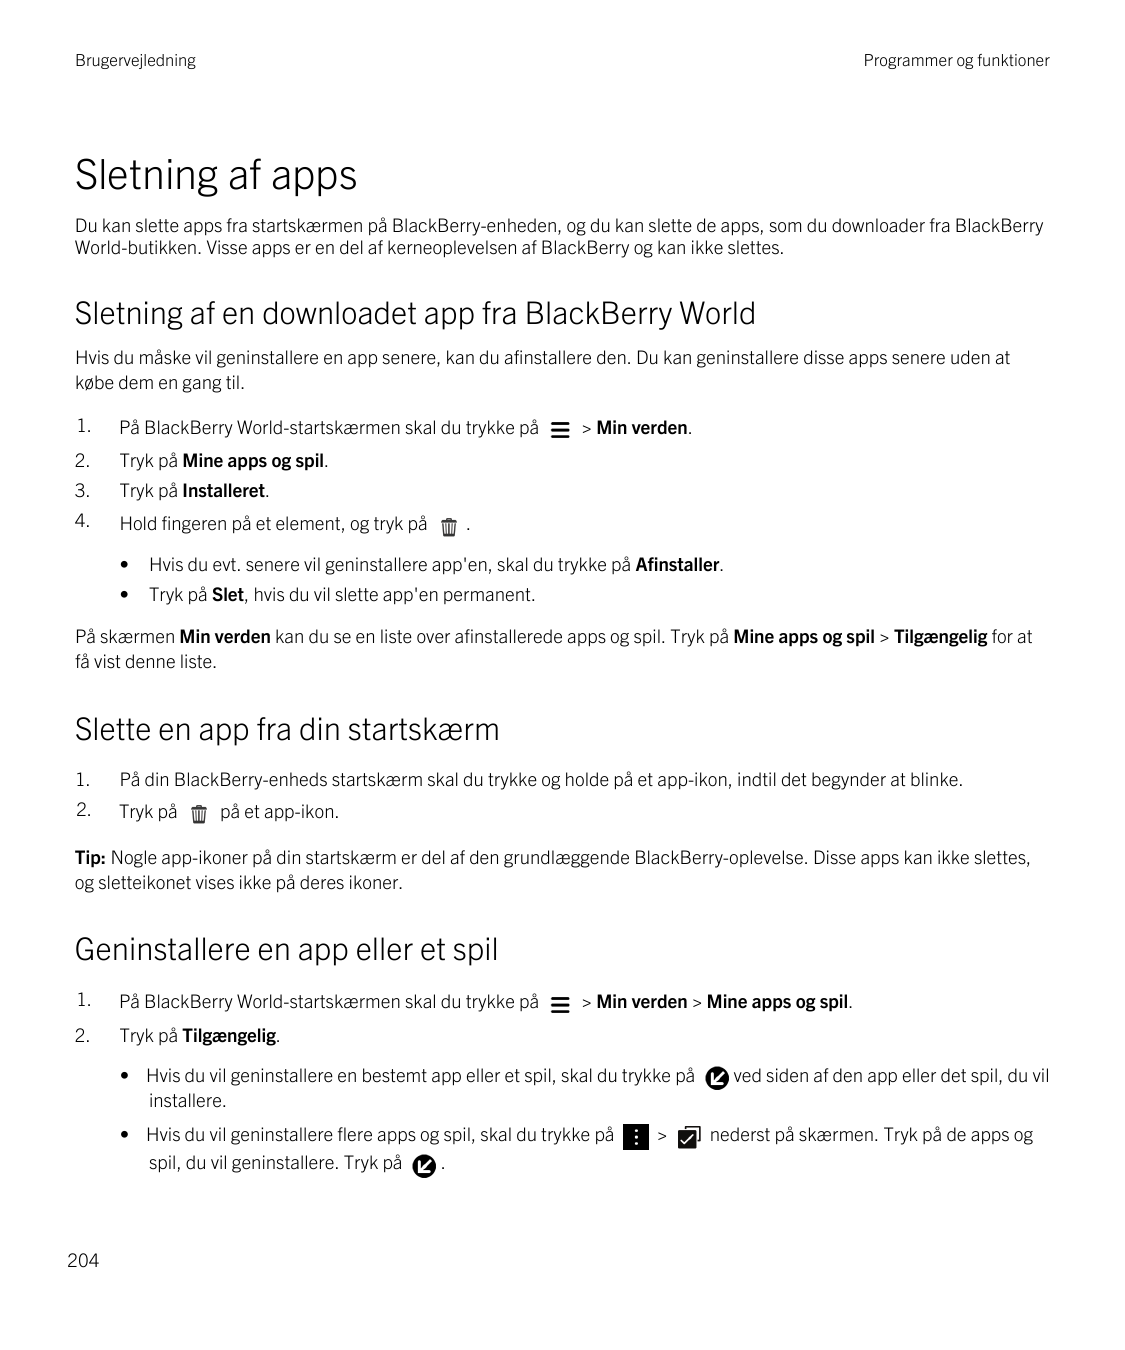 BrugervejledningProgrammer og funktionerSletning af appsDu kan slette apps fra startskærmen på BlackBerry-enheden, og du kan sle